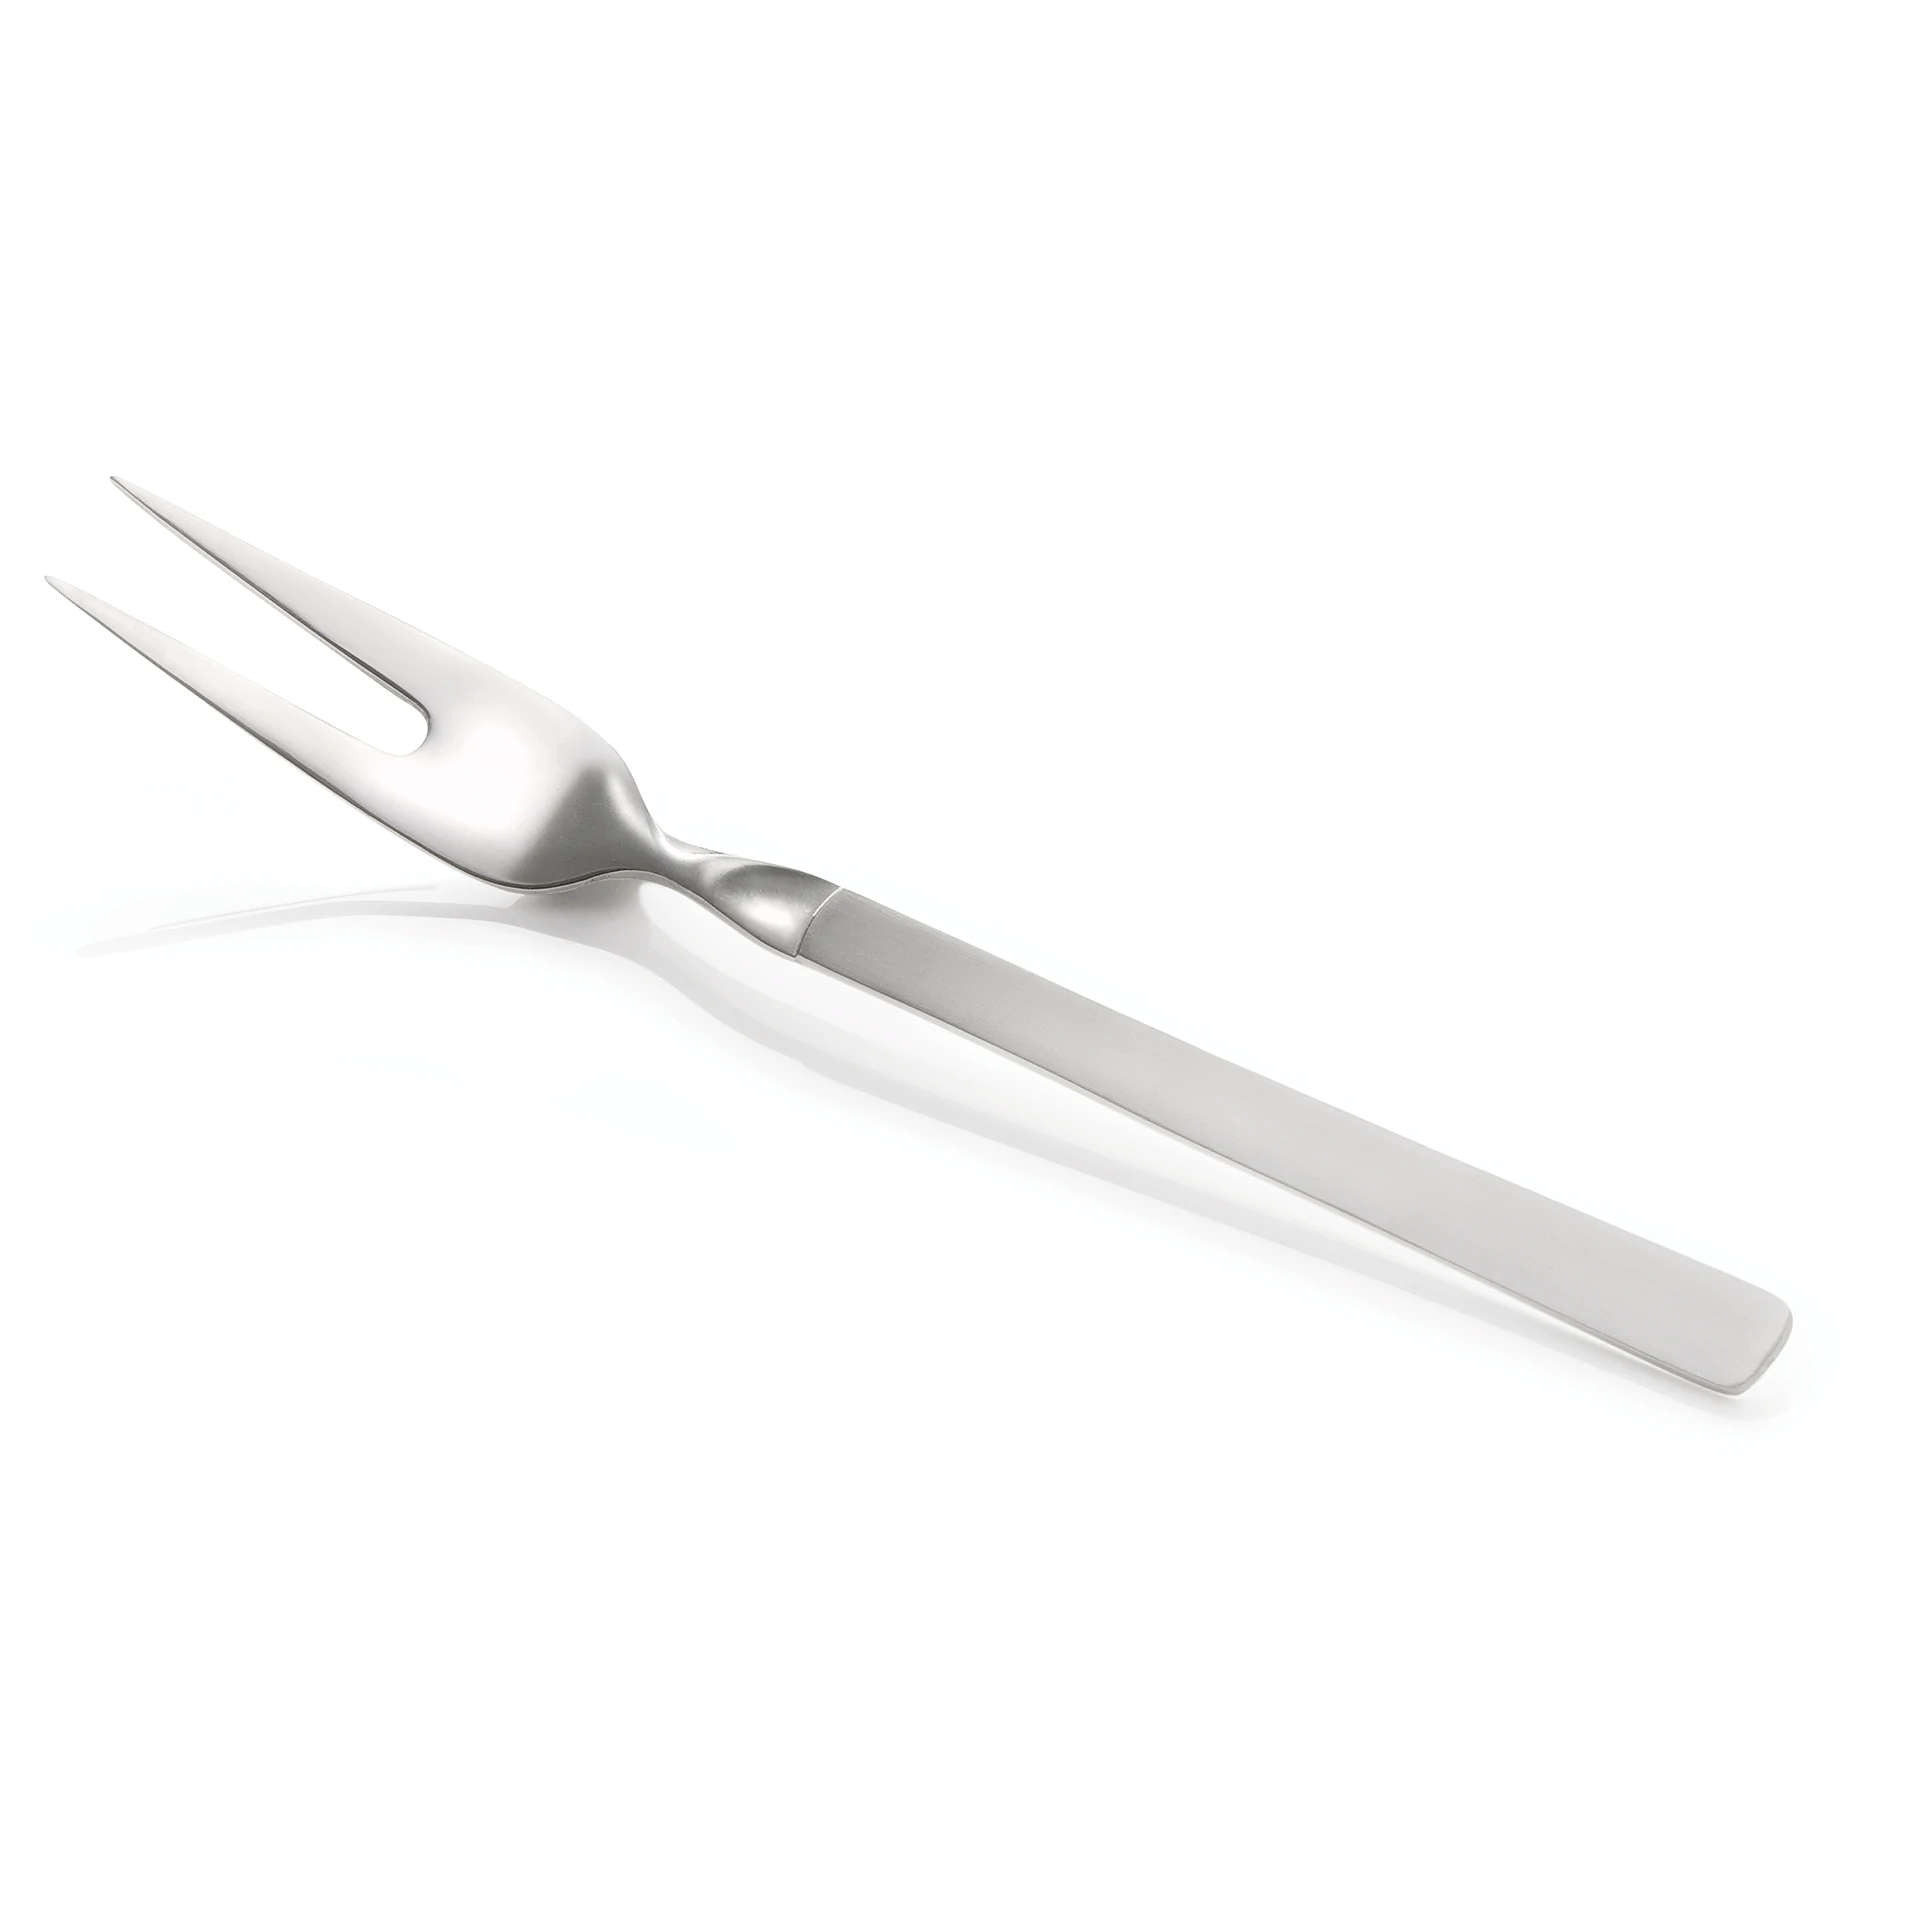 Serving fork Kitchen Tool 2160